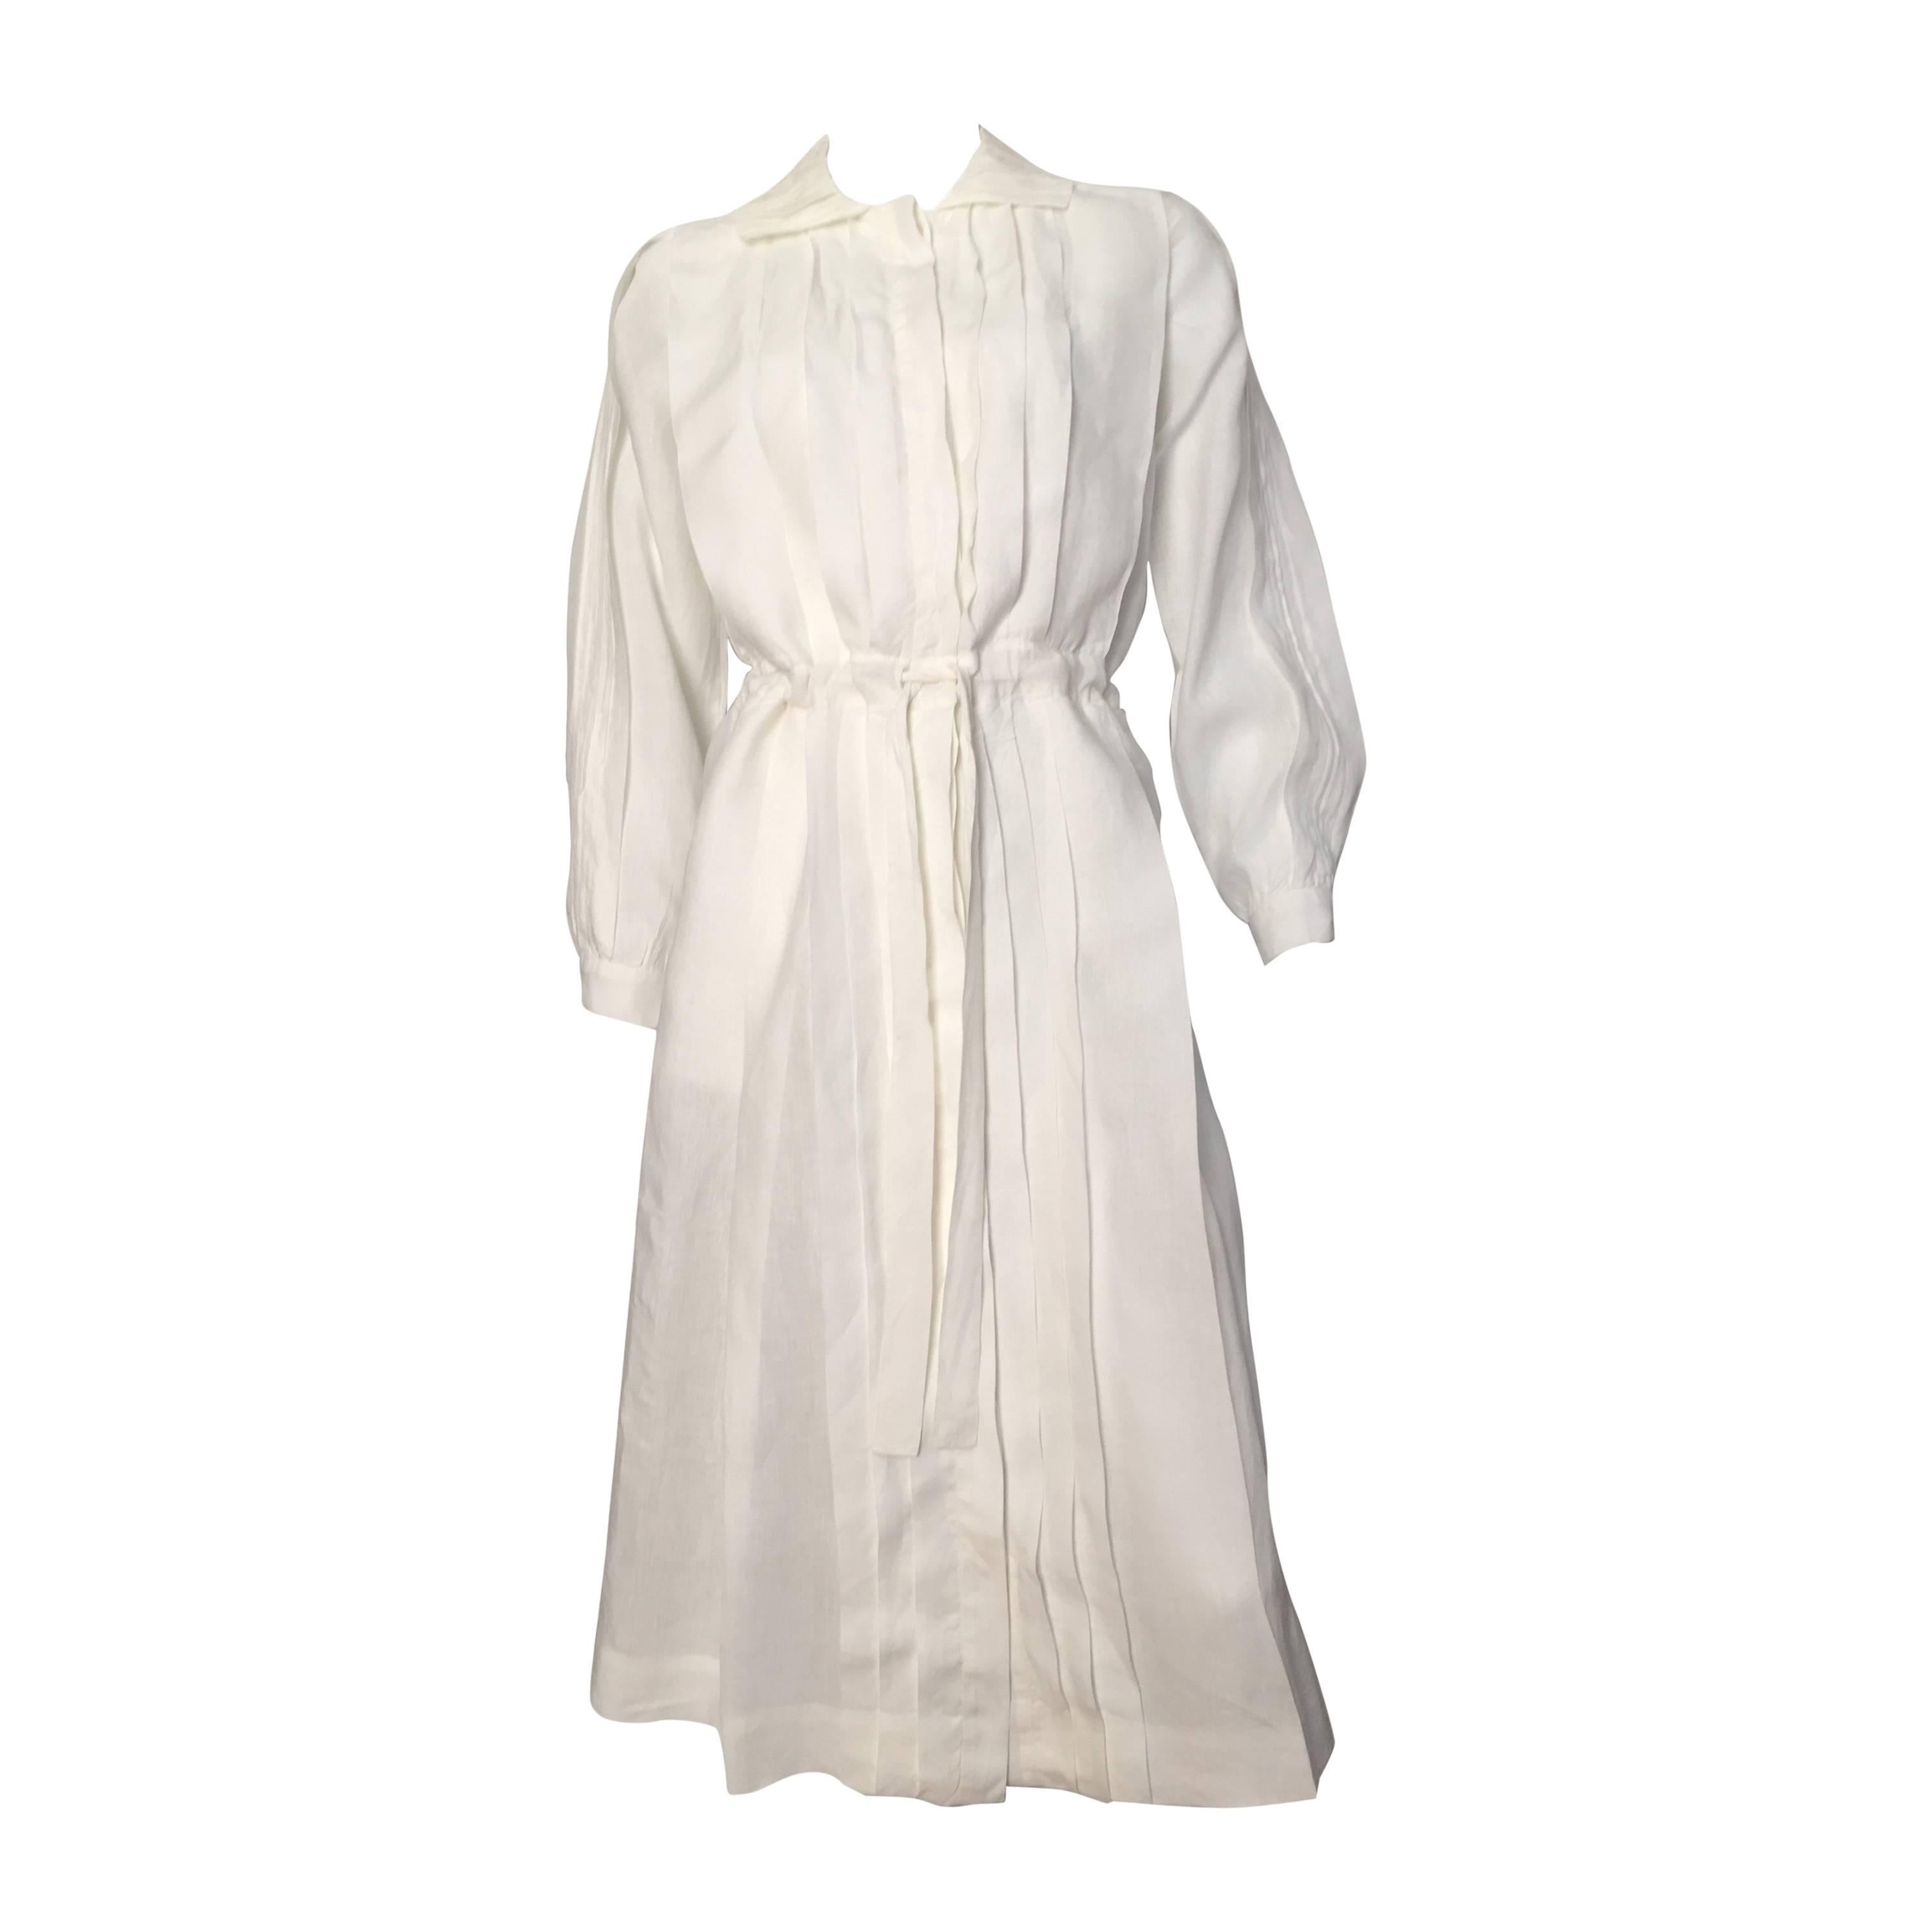 Laura Biagiotti for Bonwit Teller 80s white linen dress size 4 / 6.  For Sale